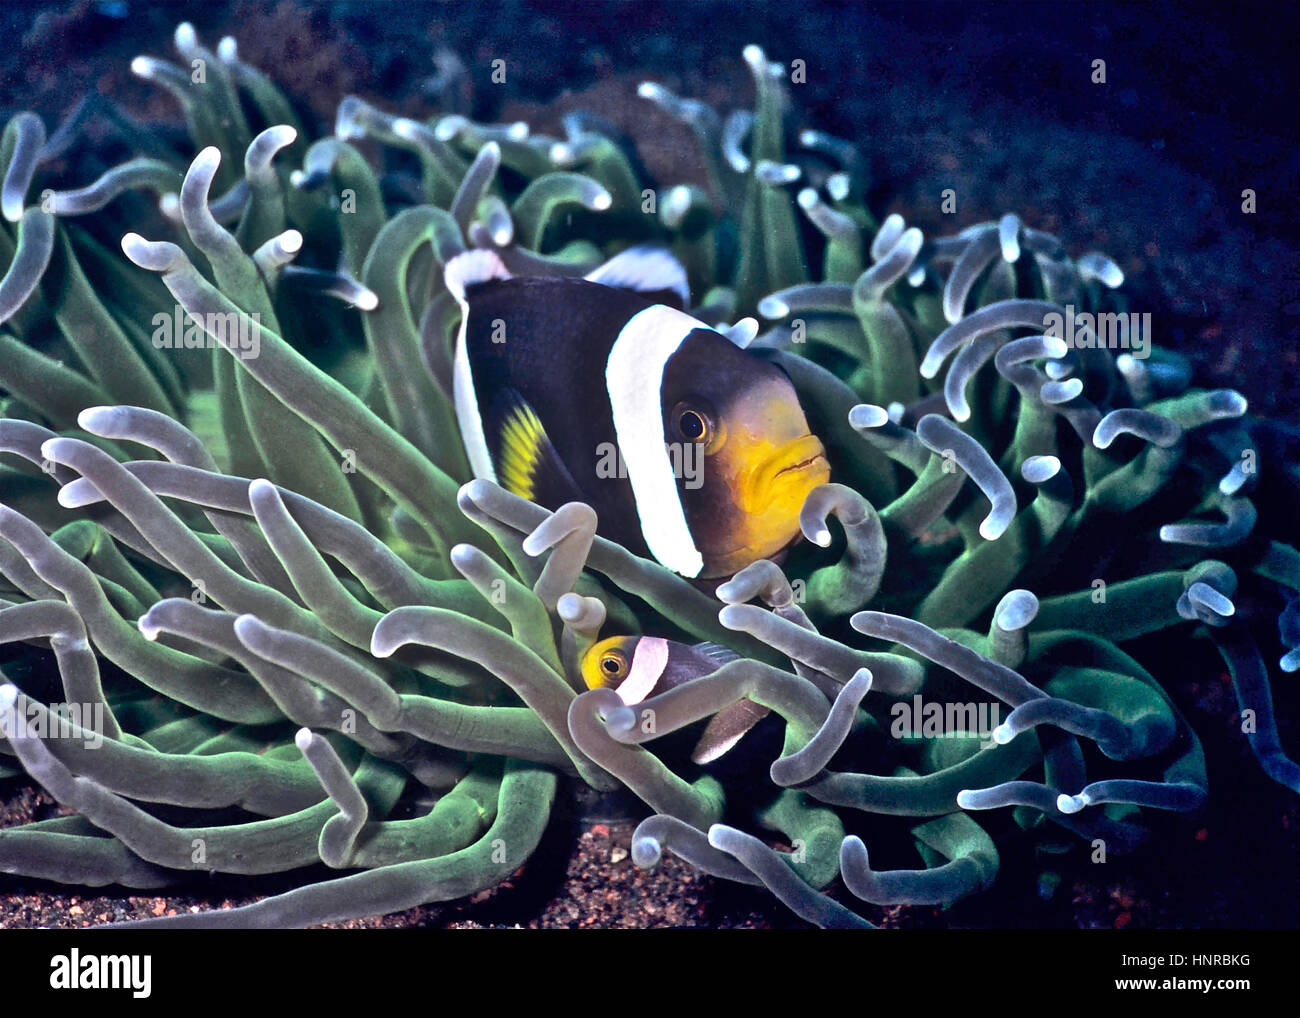 Un adulto clownfish (Amphiprion clarkii) e un bambino nella loro host (anemone Heteractis magnifica): un esempio di simbiosi. Bali, Indonesia. Foto Stock